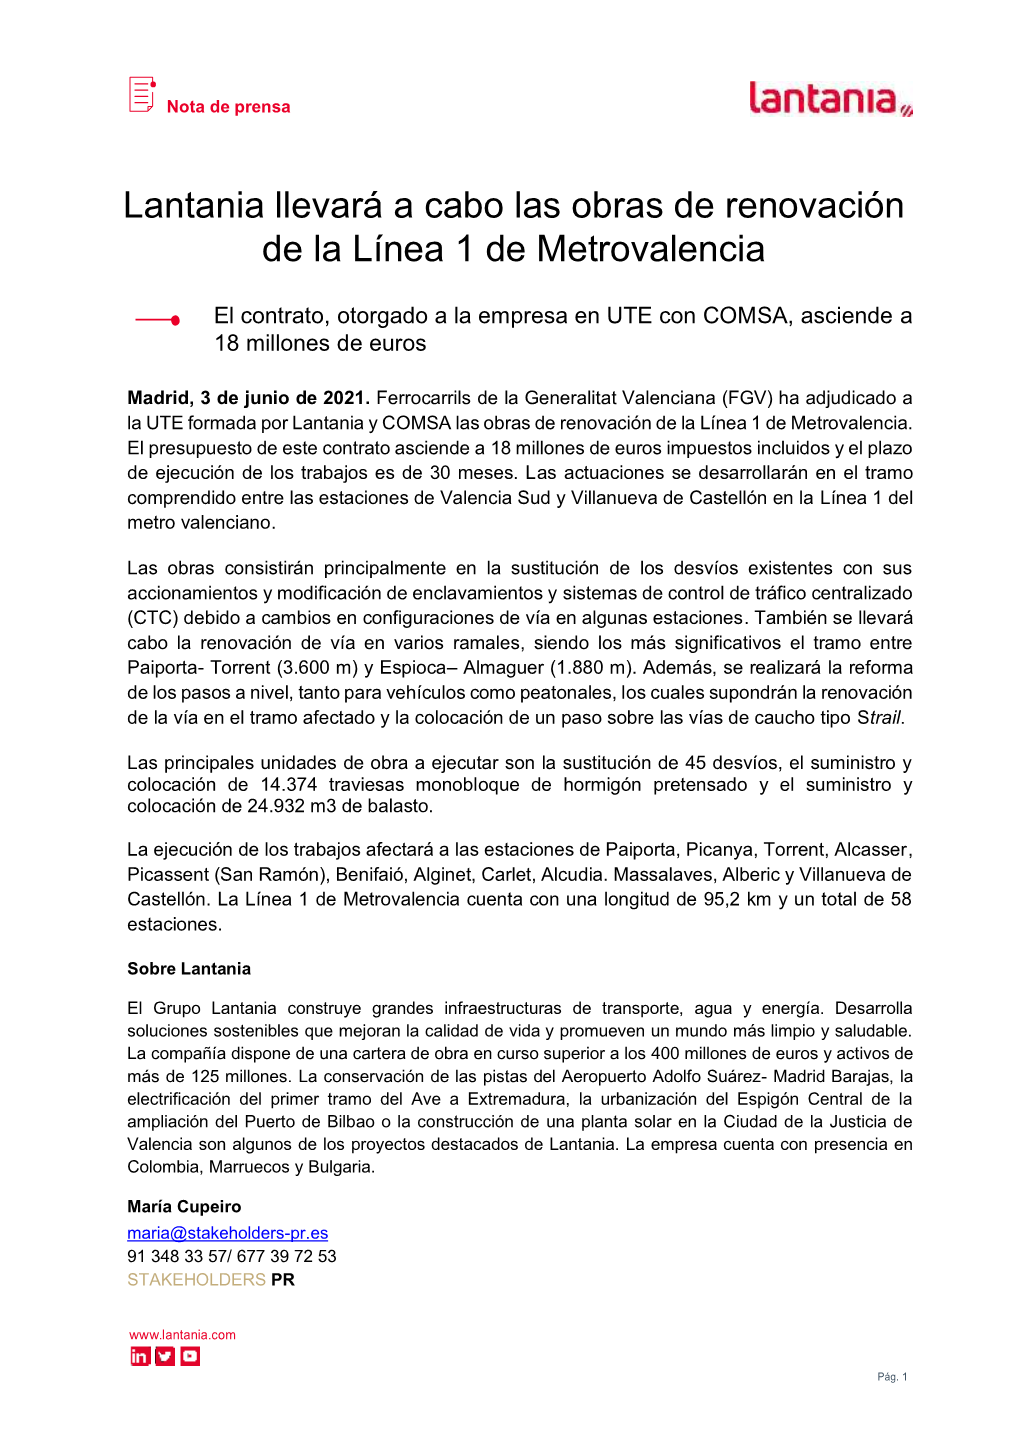 Lantania Llevará a Cabo Las Obras De Renovación De La Línea 1 De Metrovalencia